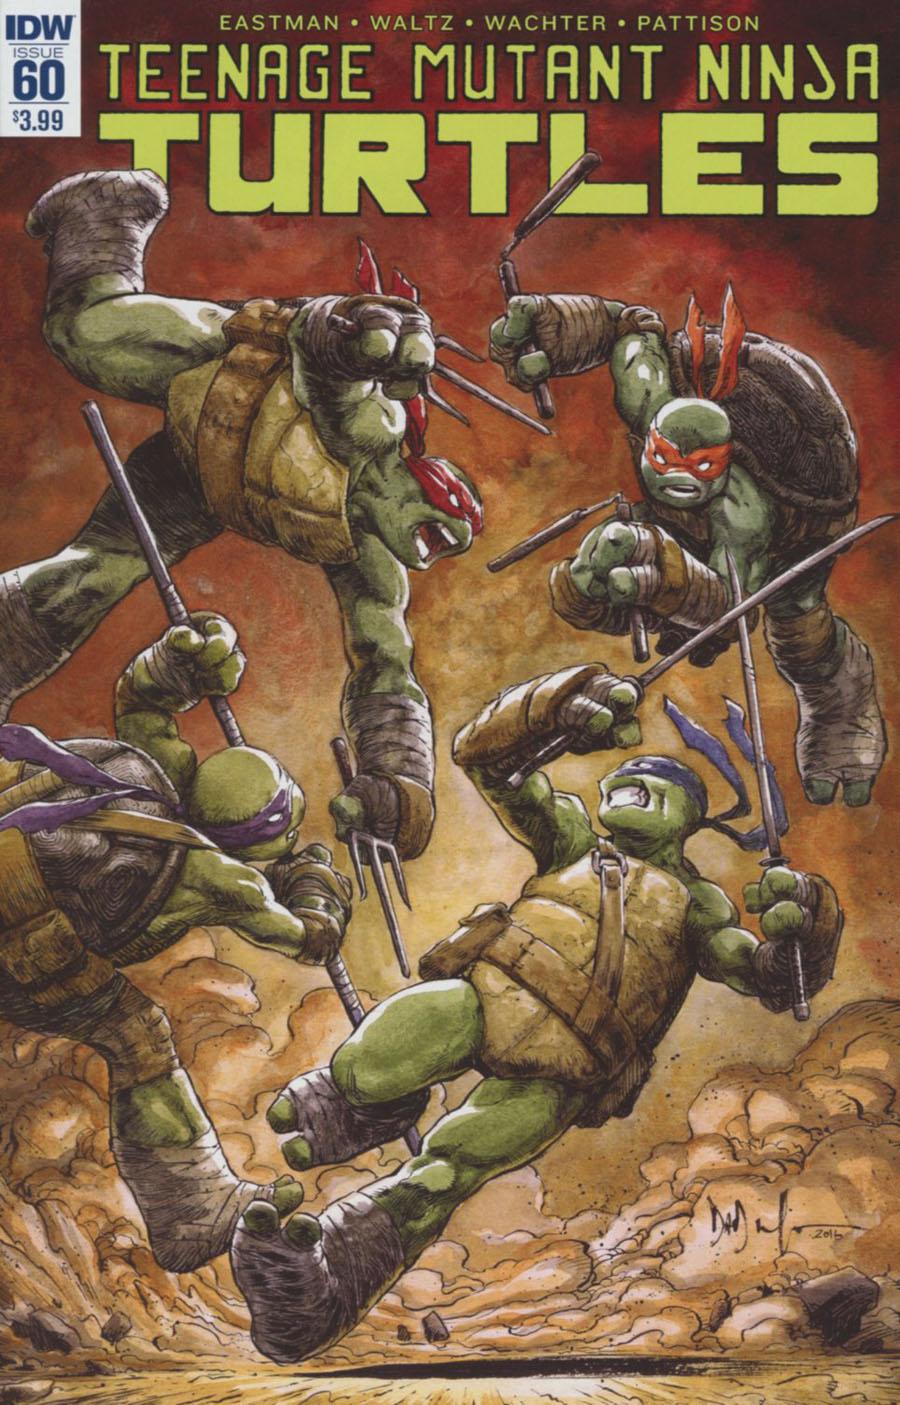 Teenage Mutant Ninja Turtles Vol. 5 #60